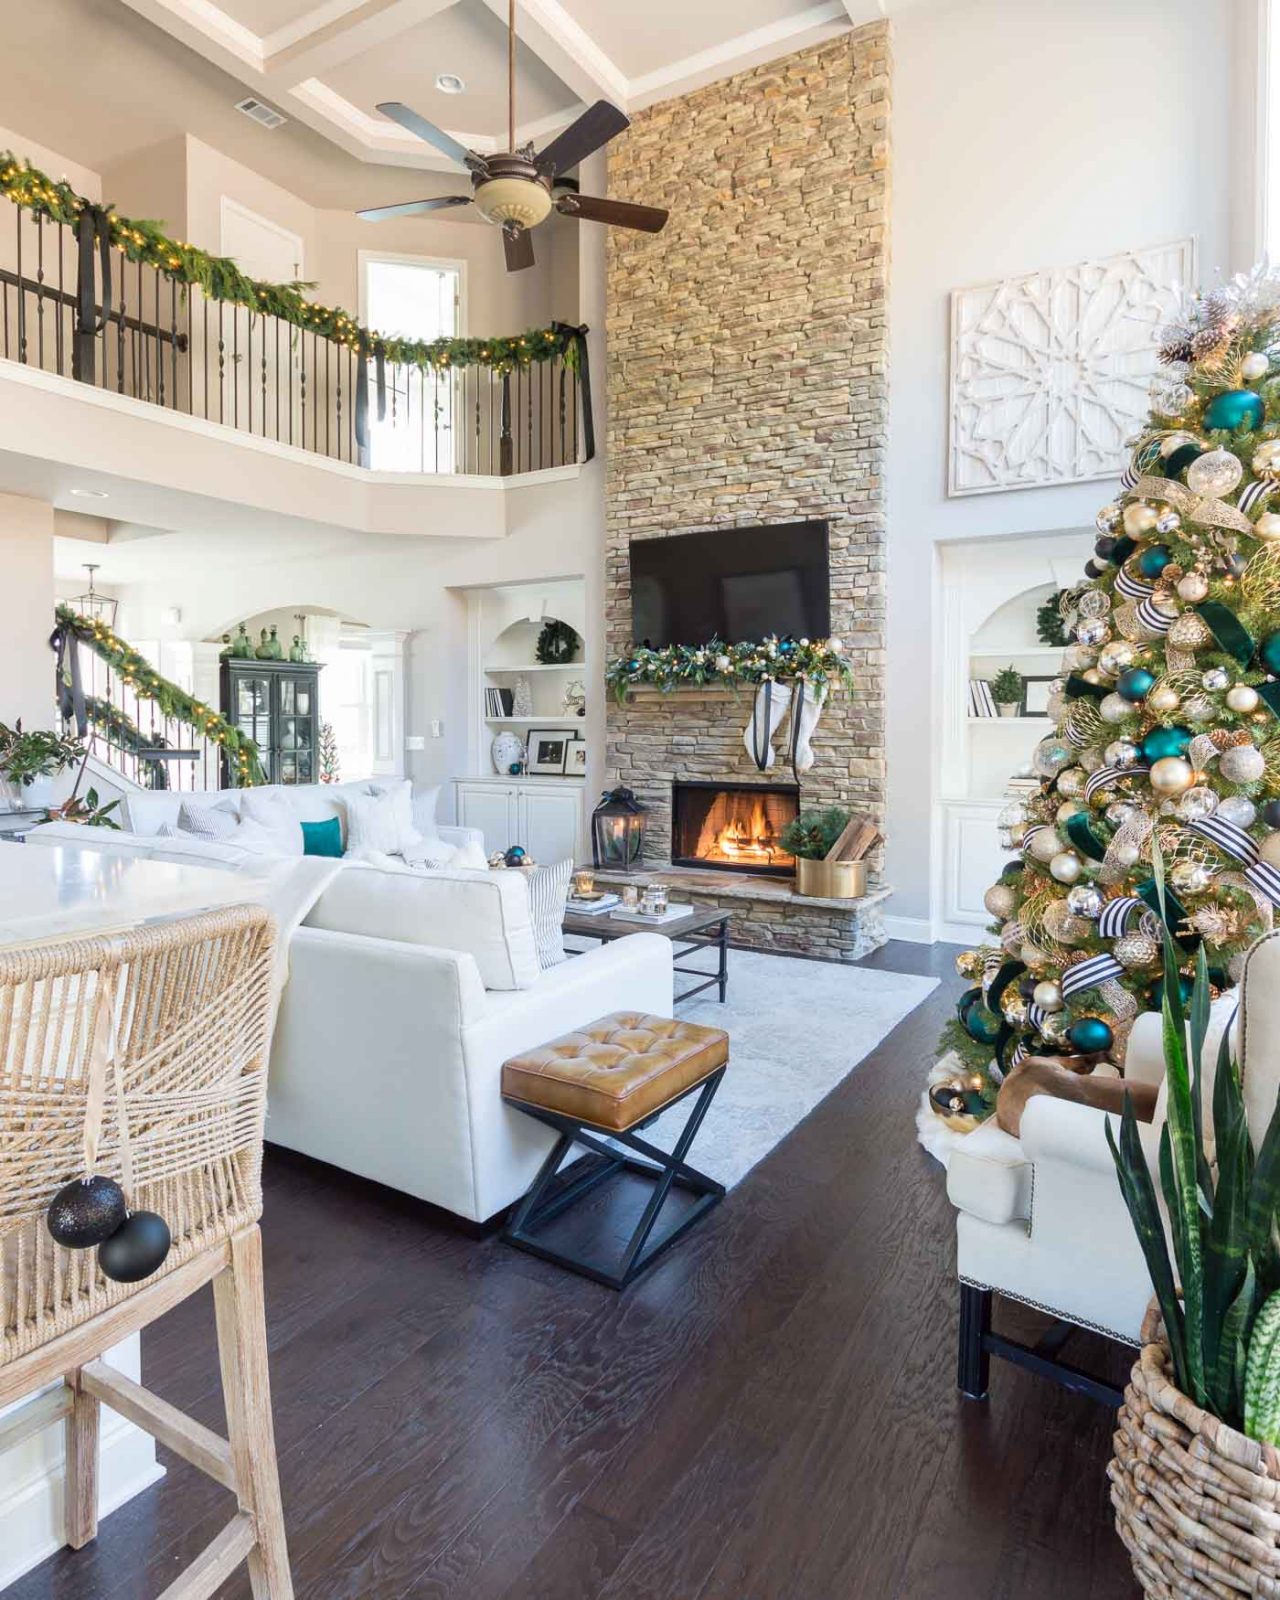 Різдвяні декорації: як гармонійно прикрасити будинок до свят і не перетворити на хаос із дощику 7